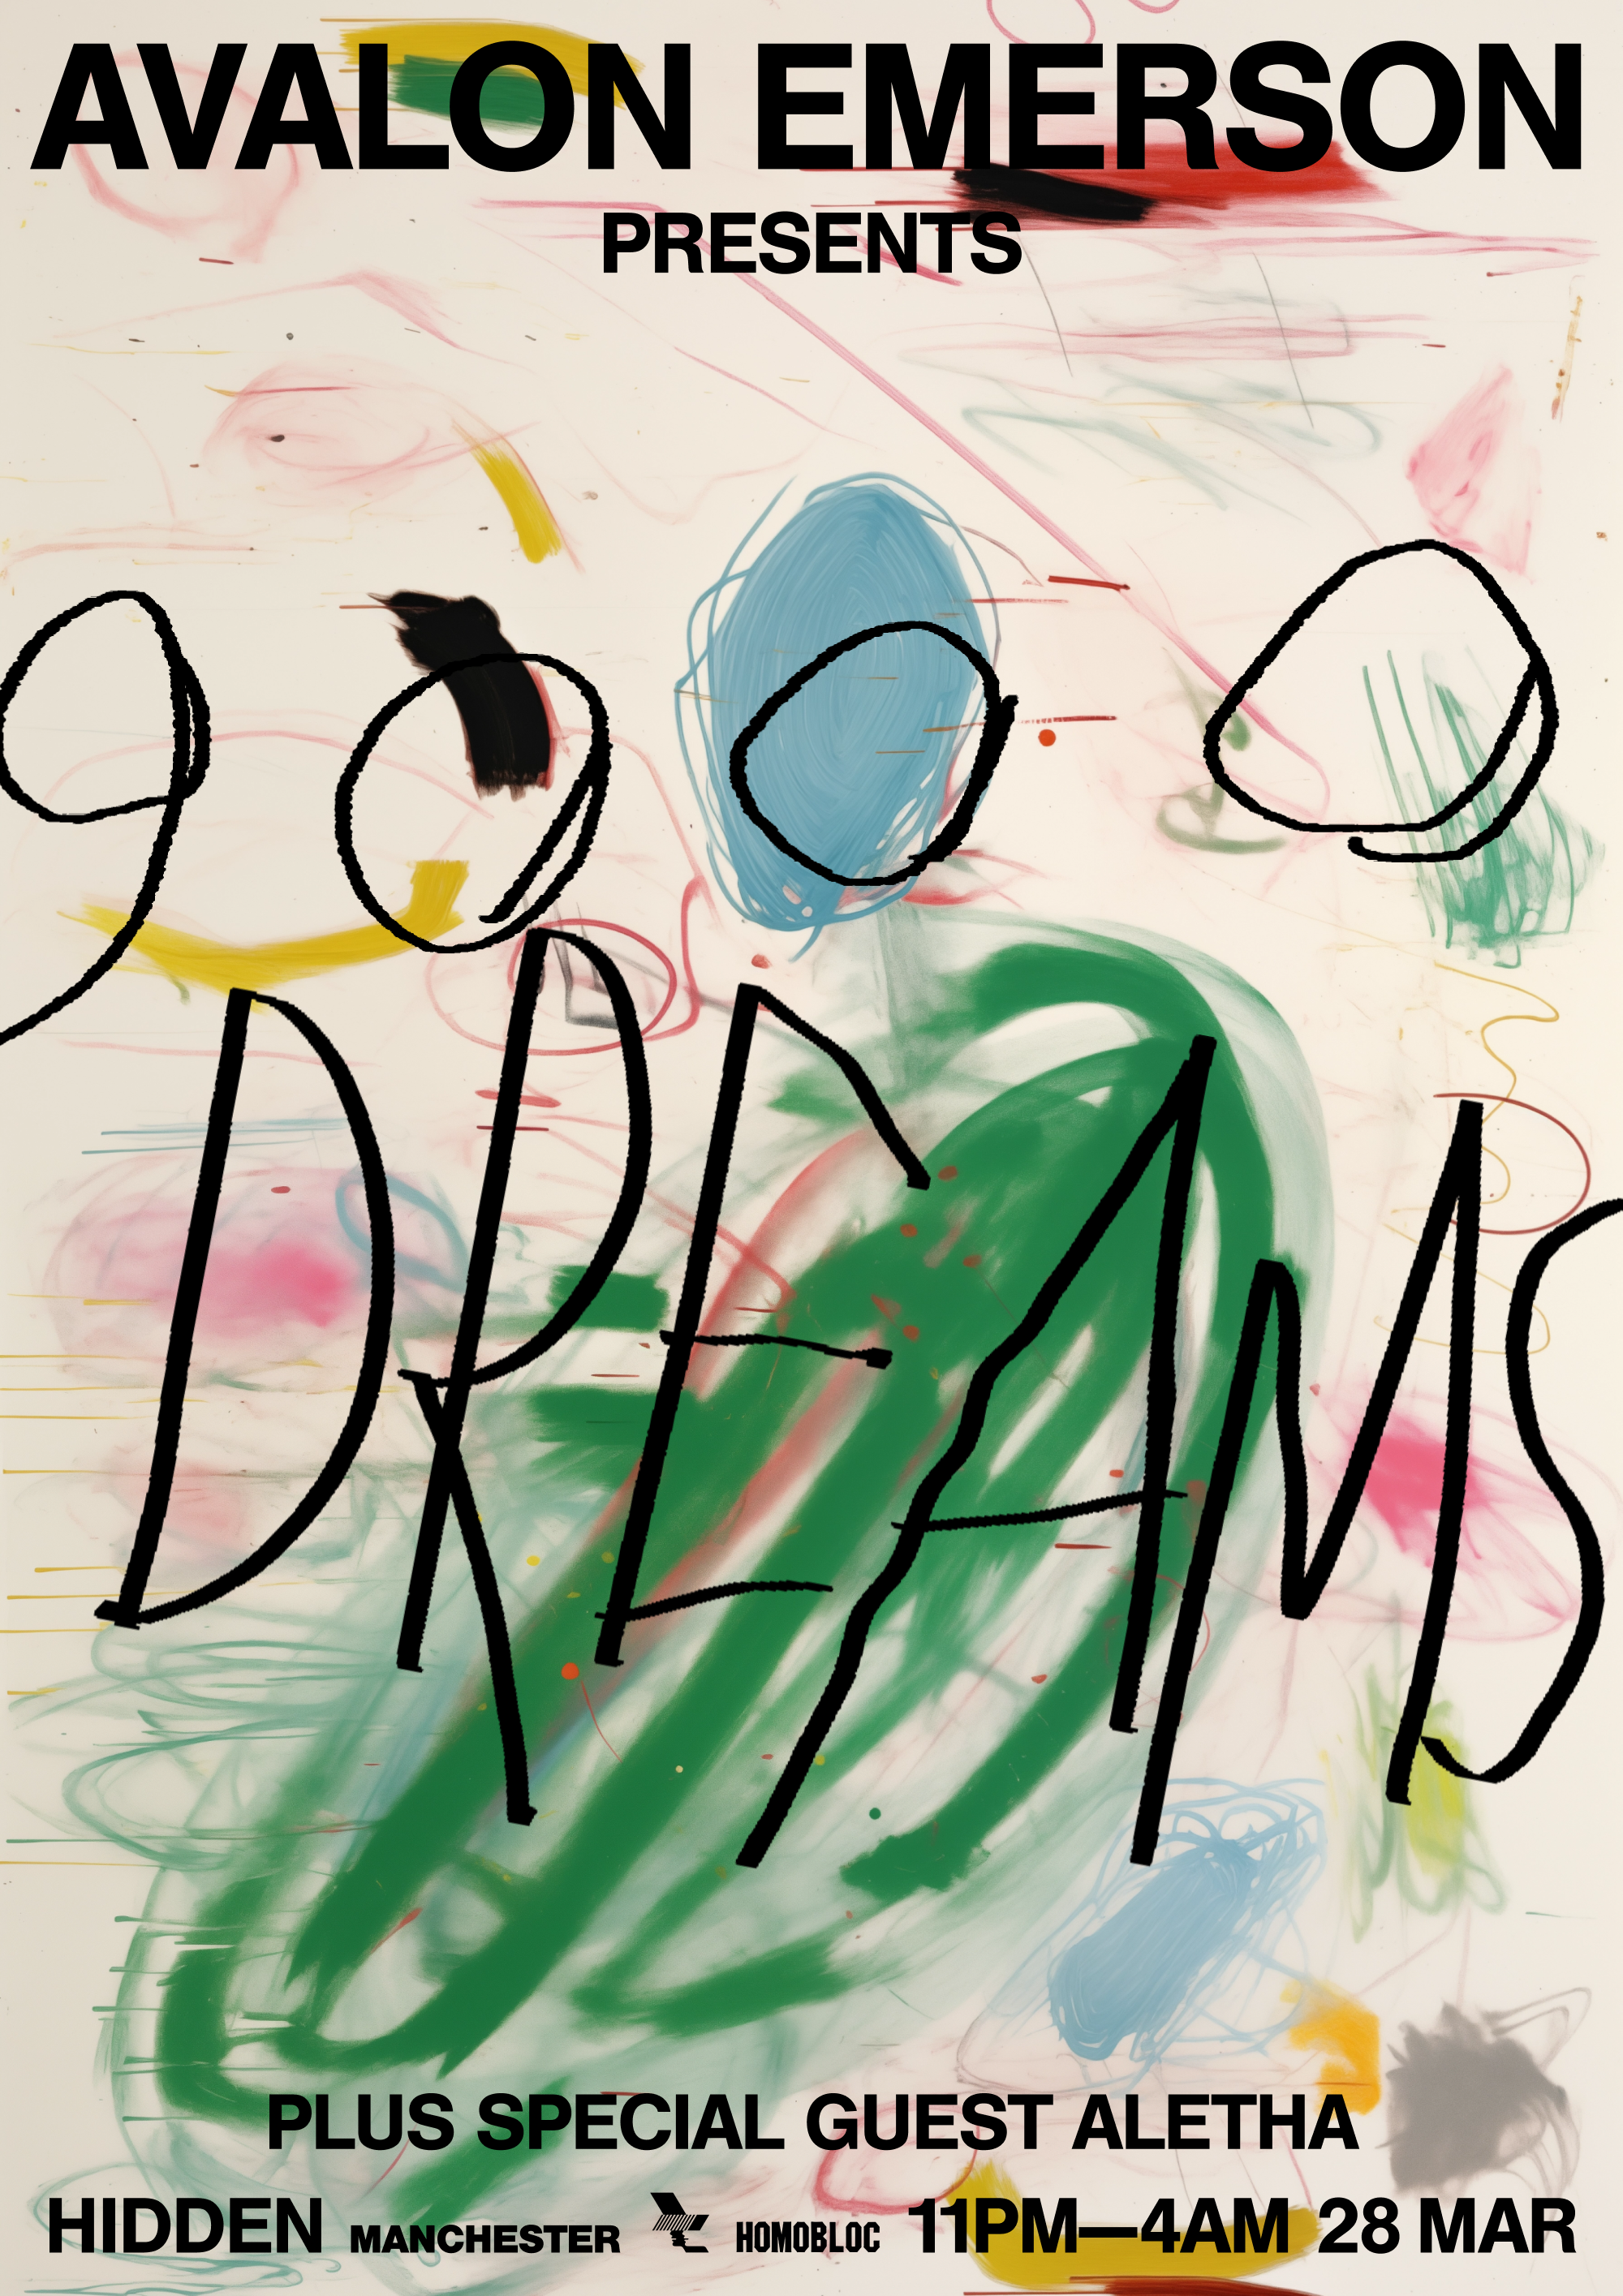 Avalon Emerson presents: 9000 Dreams - Página frontal